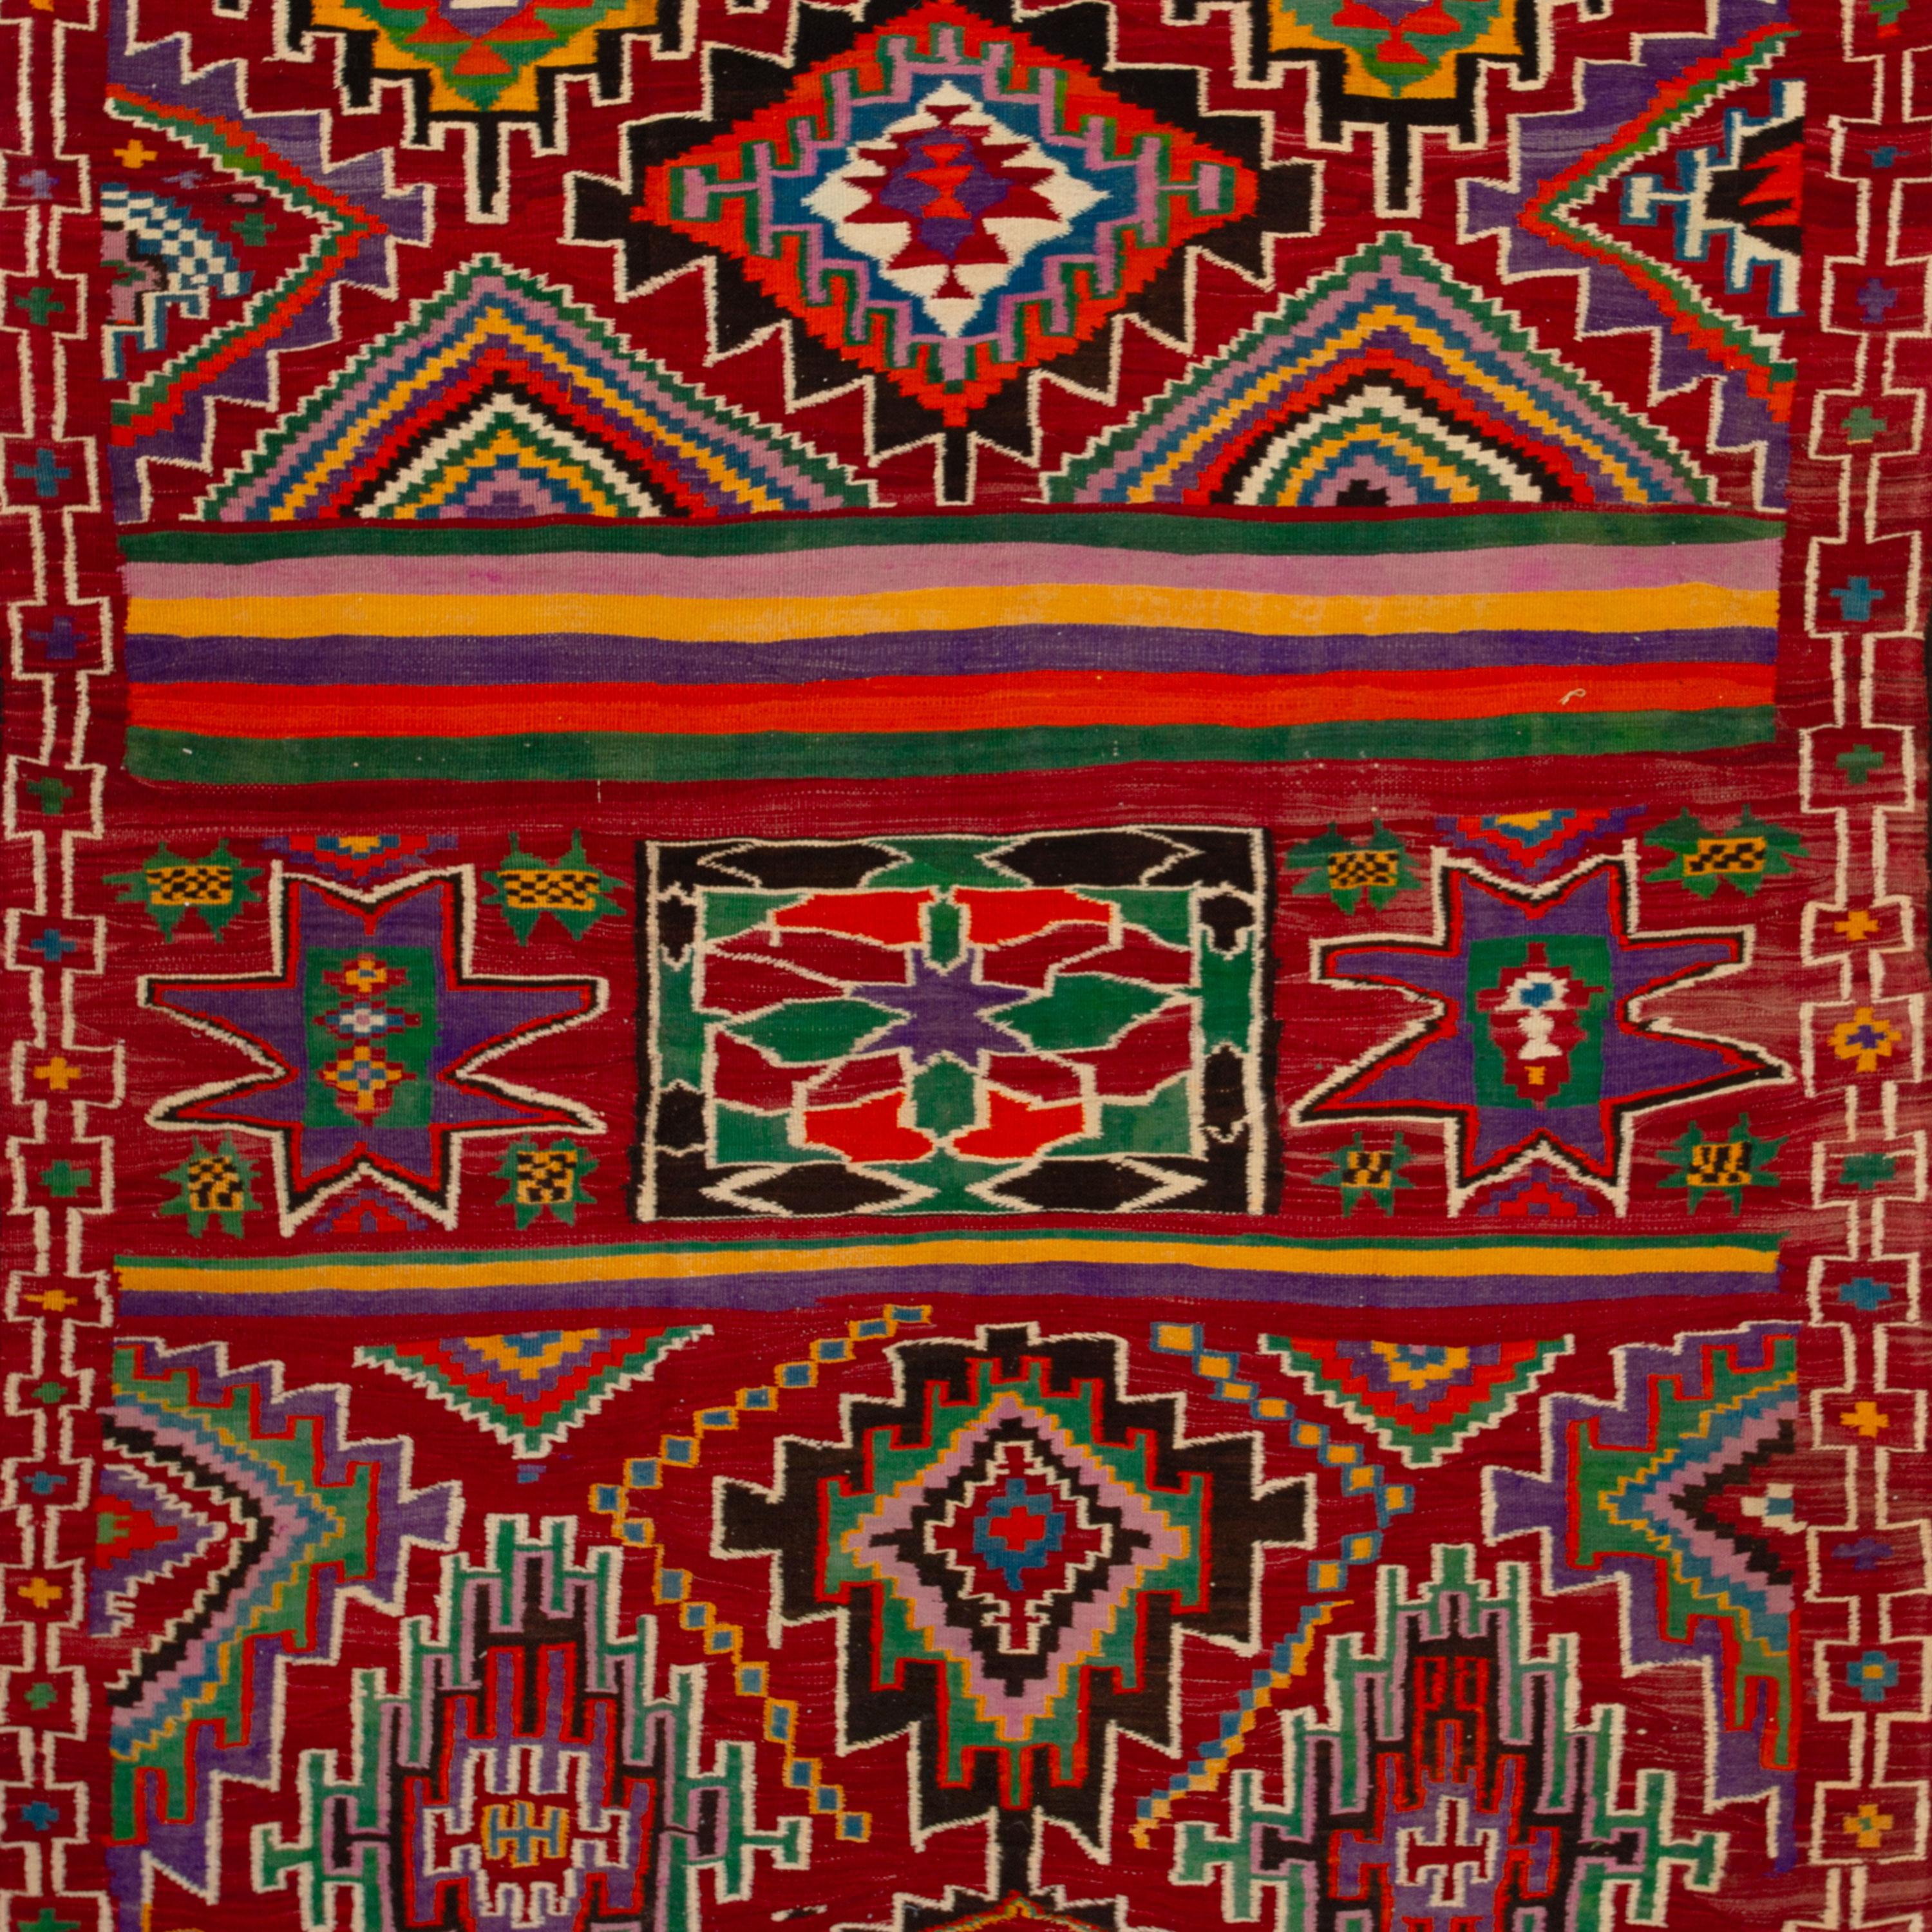 Ce tapis kilim turc vintage a été tissé au début du 20e siècle dans les anciennes habitations de Kanya et Malatya par des communautés nomades d'Anatolie. Tissés à la main à partir de la laine collectée et filée de leurs propres troupeaux, ces